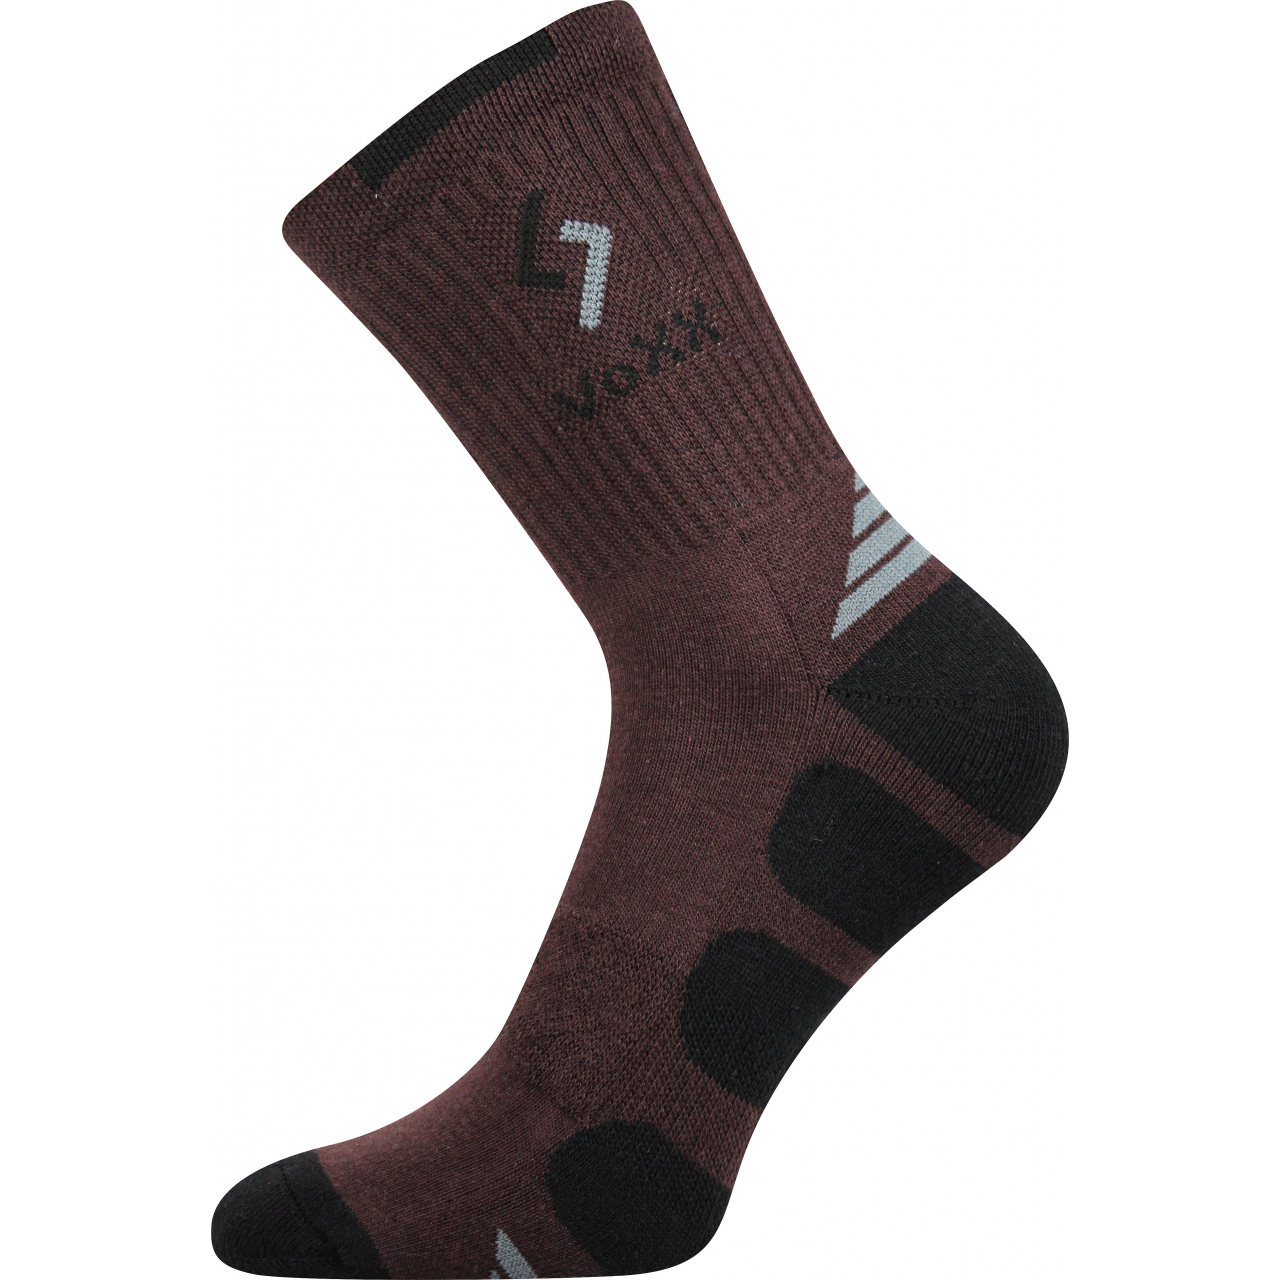 Ponožky sportovní Voxx Tronic - hnědé-černé, 35-38